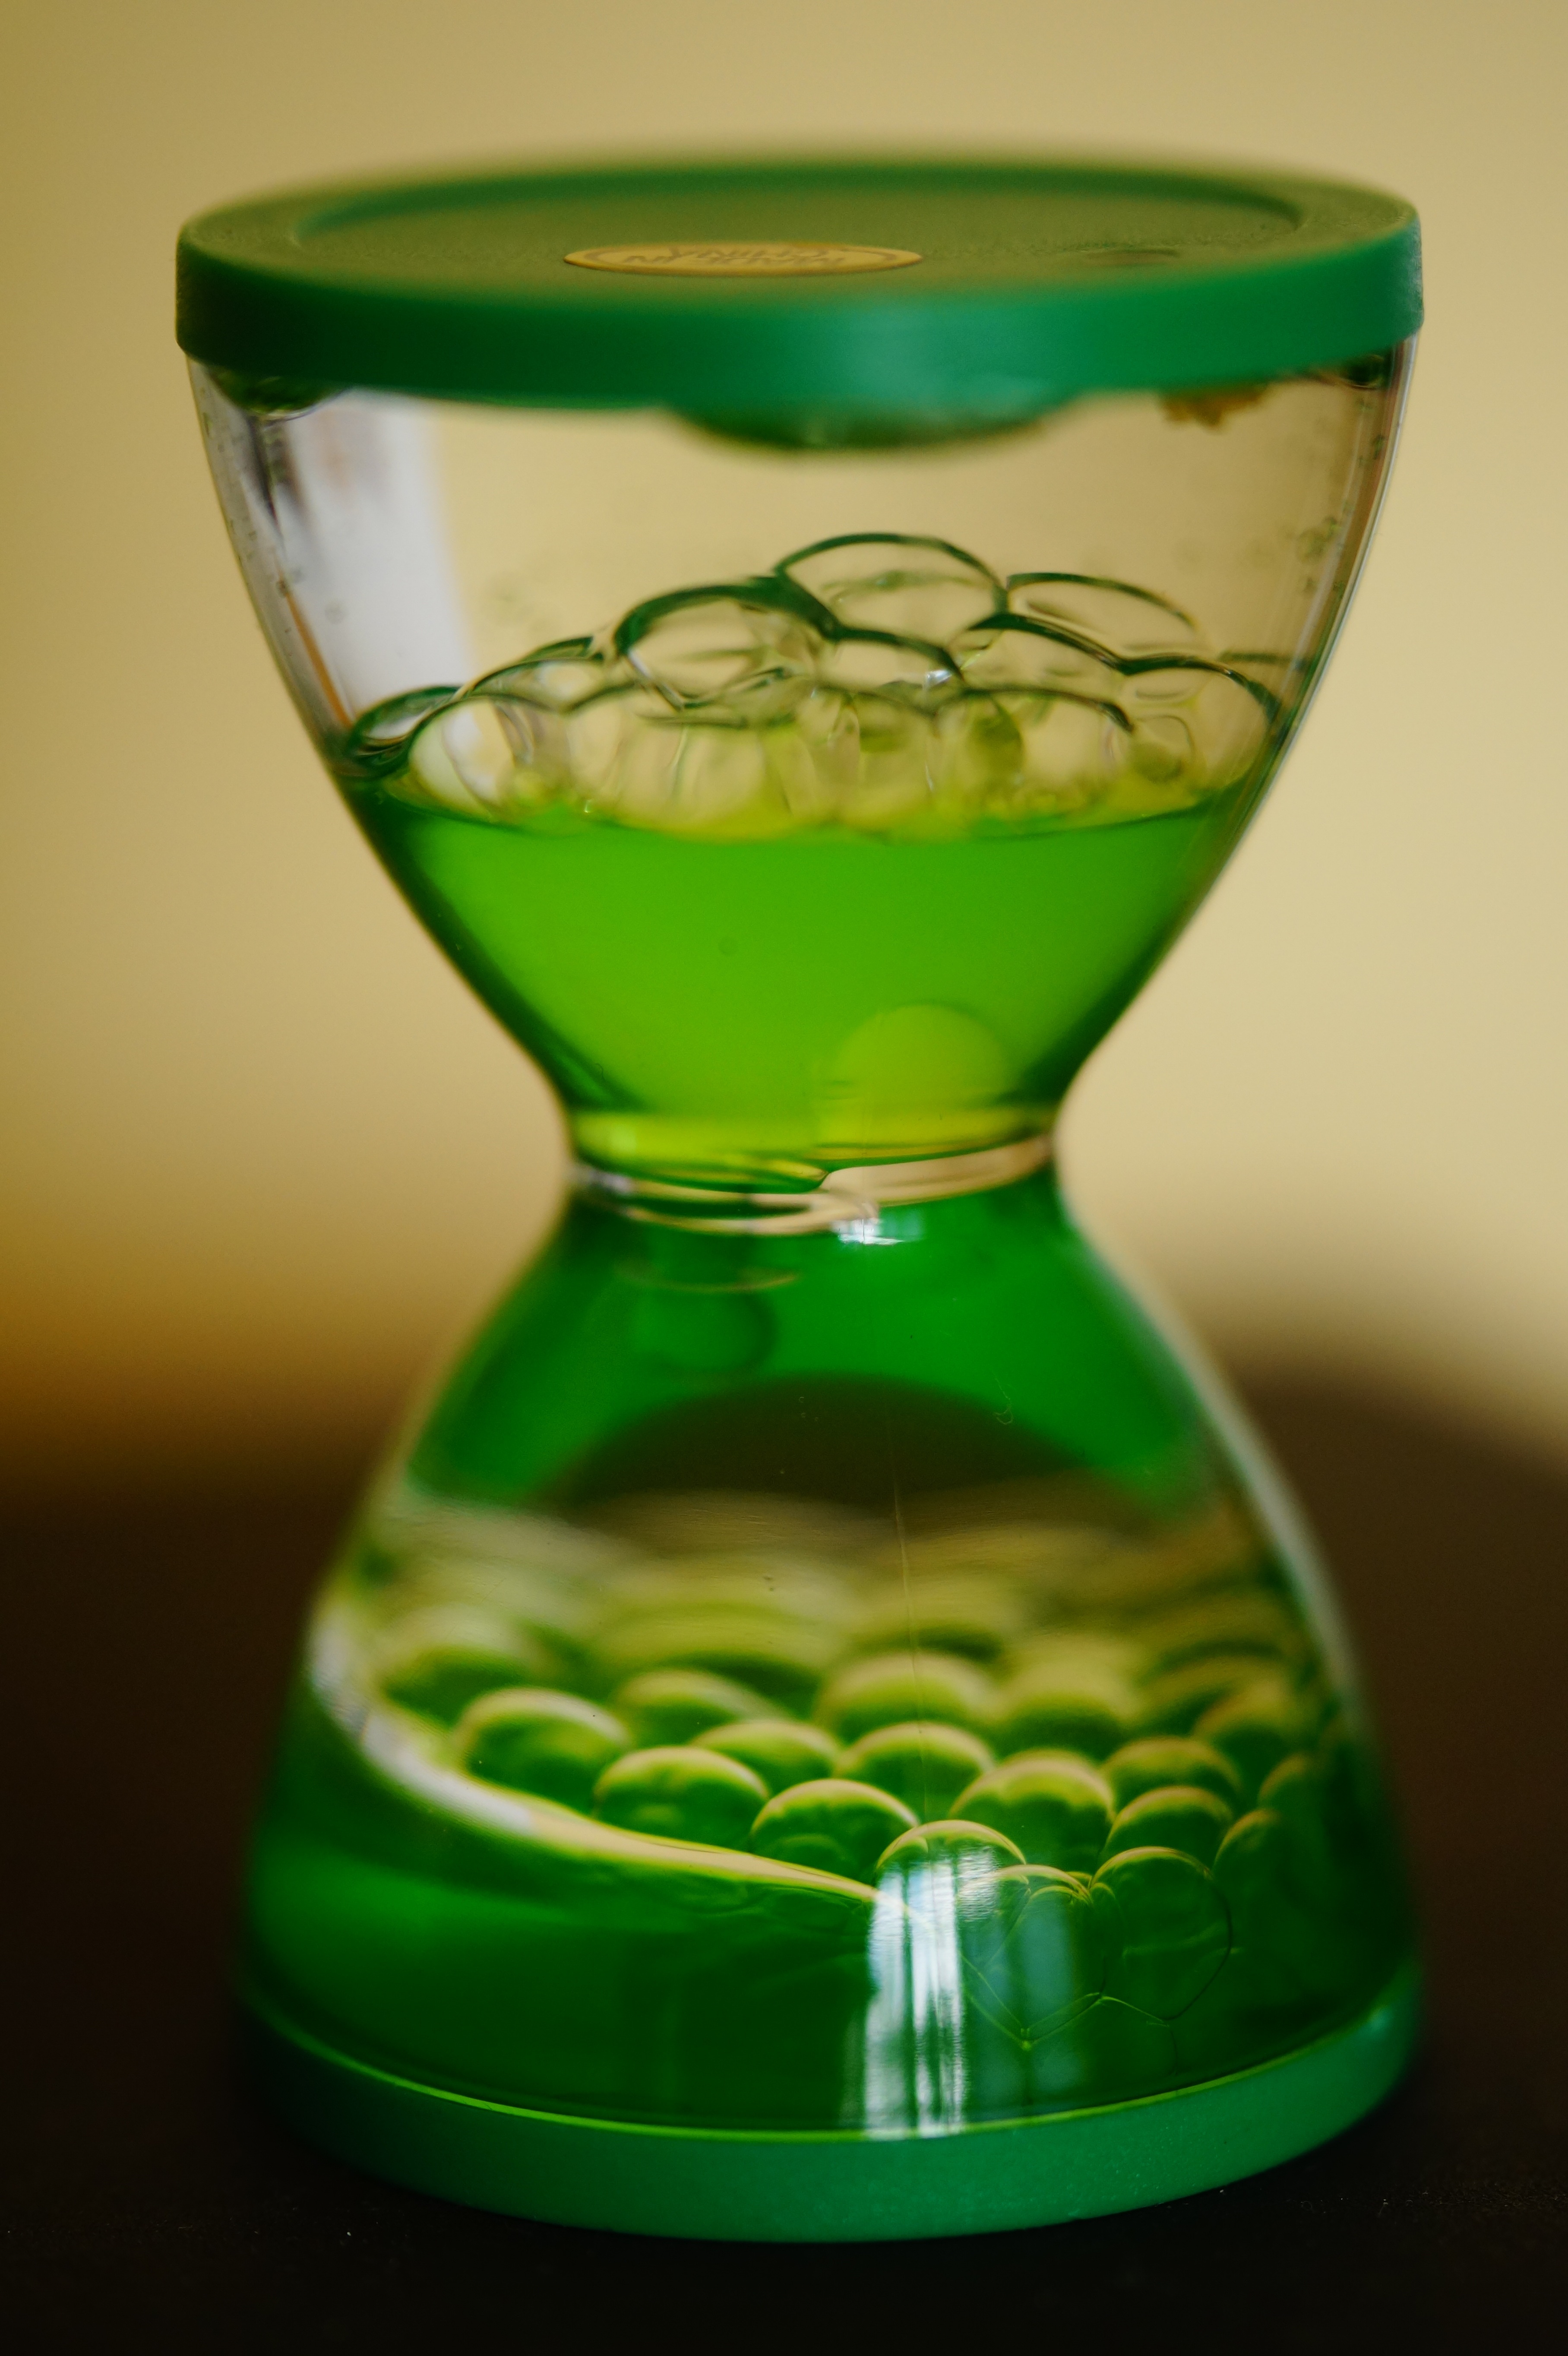 Бокал пузырьками. Пузырьки в стакане. Стакан с зеленой жидкостью. Стаканы с пузырьками воздуха. Стакан зеленый стекло.